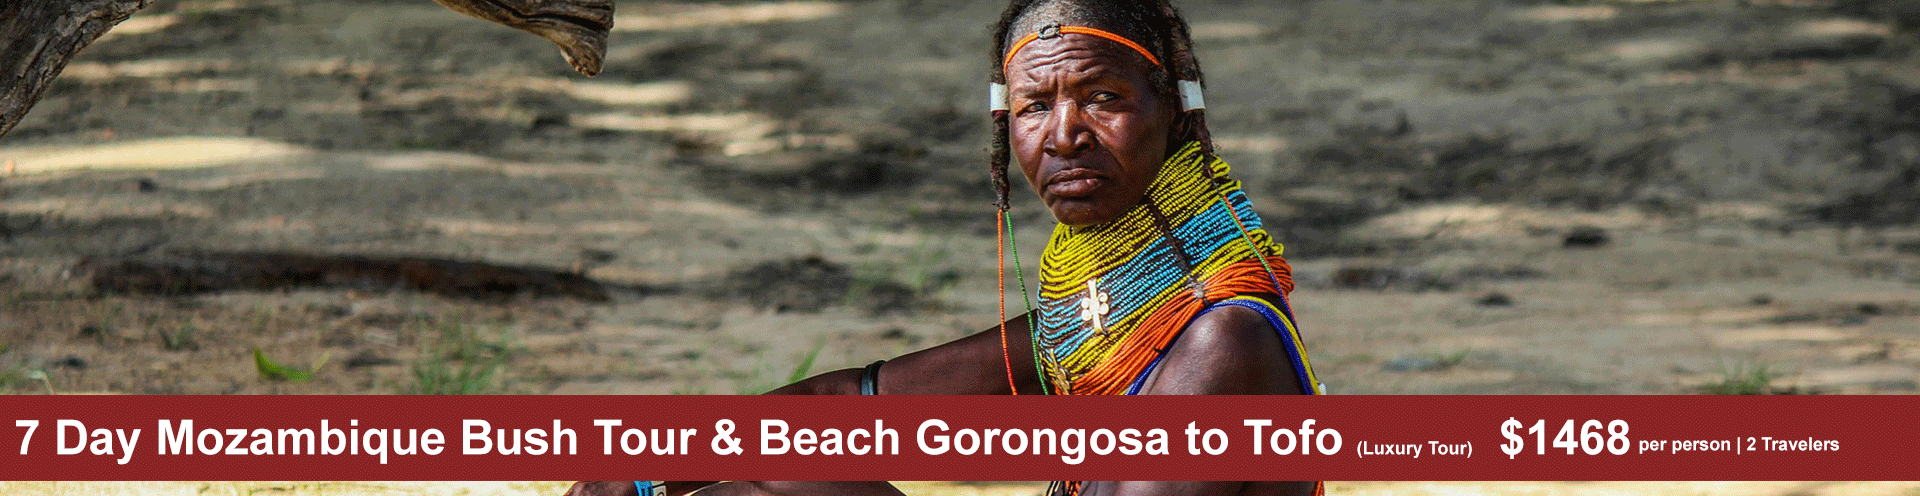 7 Day Mozambique Bush Tour & Beach Gorongosa to Tofo